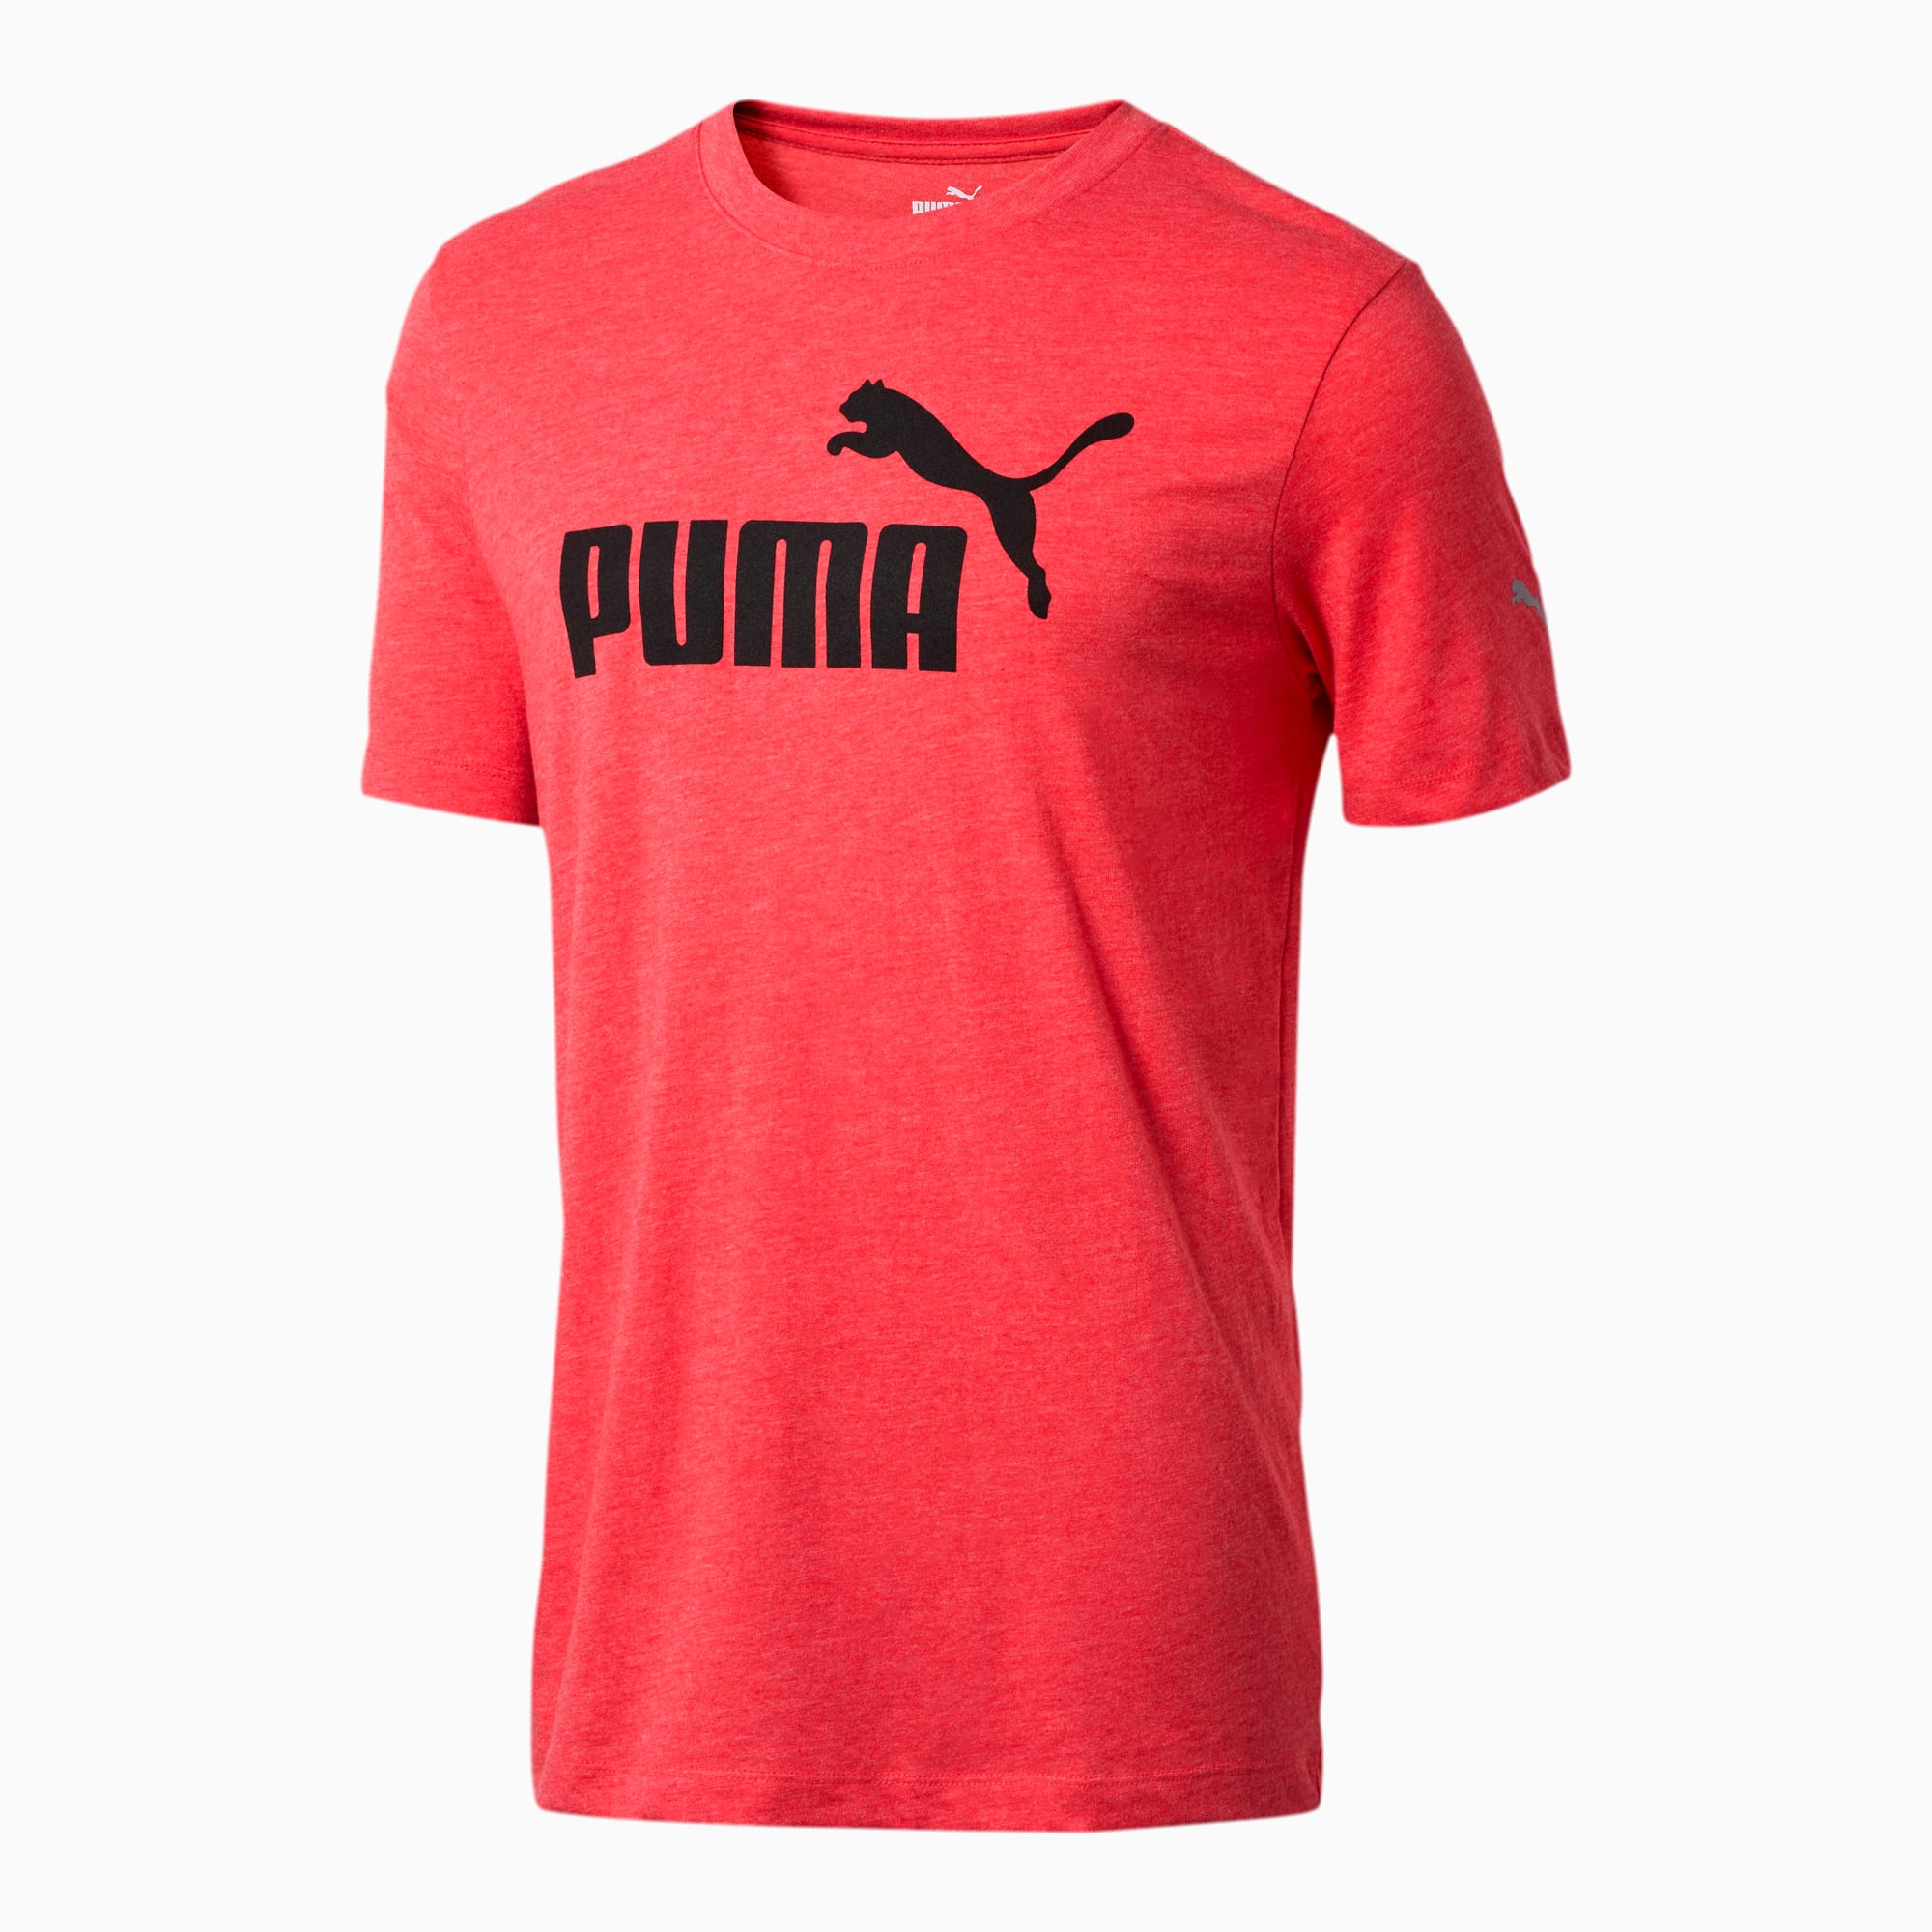 puma shirt logo